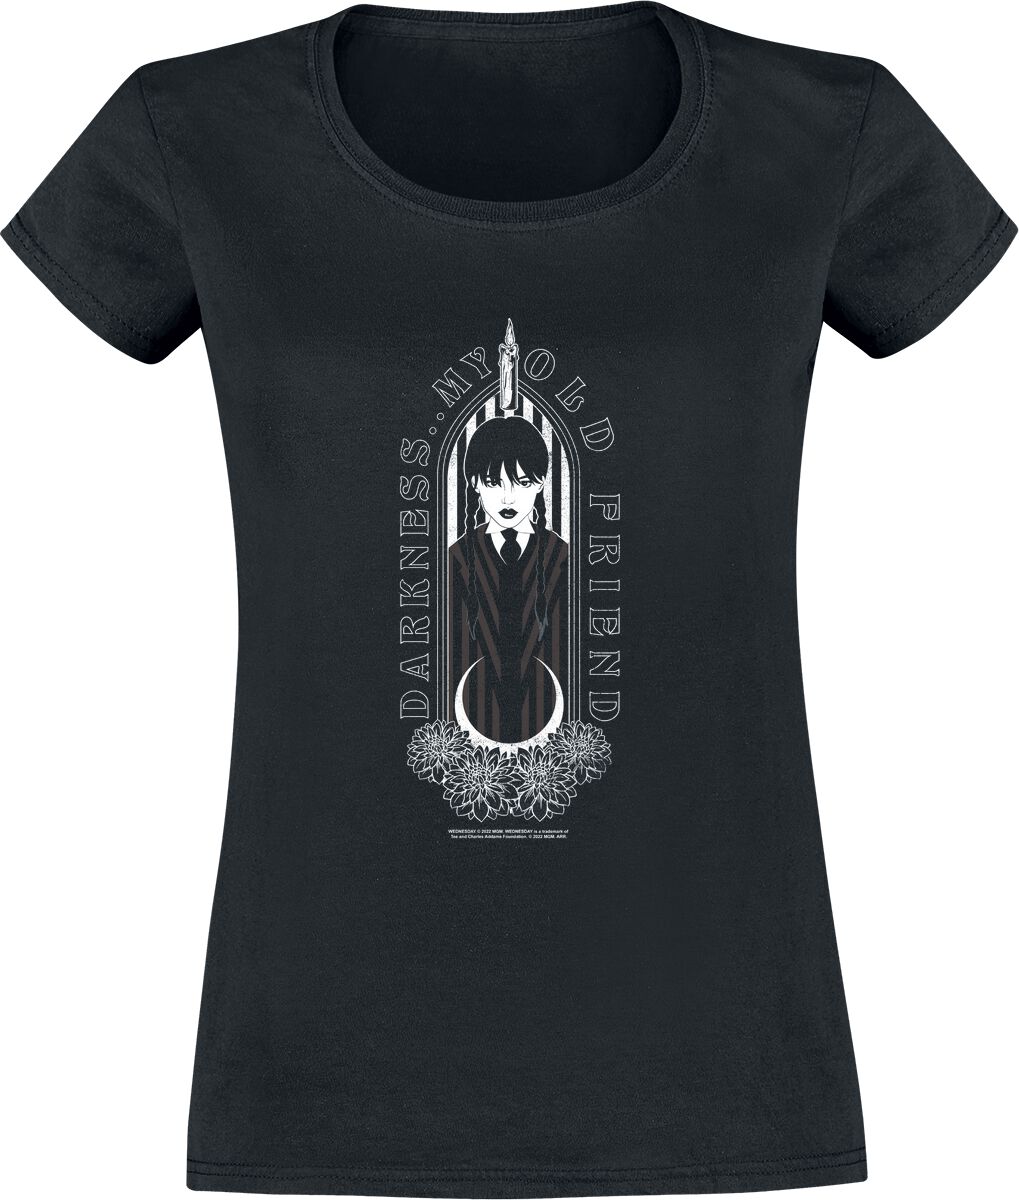 T-Shirt Manches courtes de Wednesday - Friend Of Darkness - S à XXL - pour Femme - noir